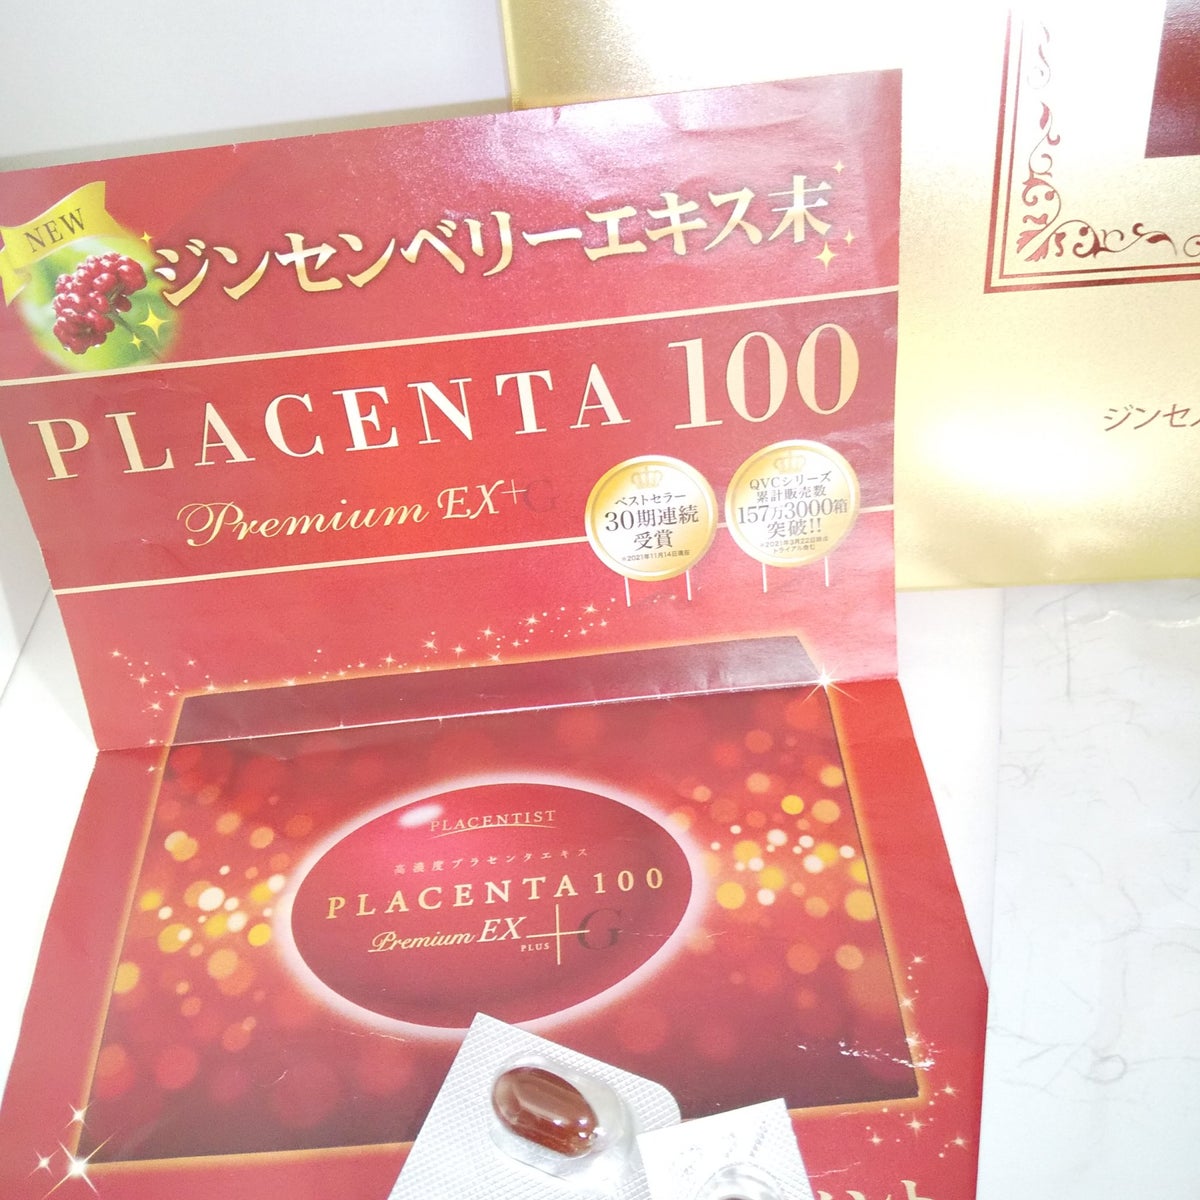 PLACENTA 100 Premium EX PLUS (150粒)外箱開封品